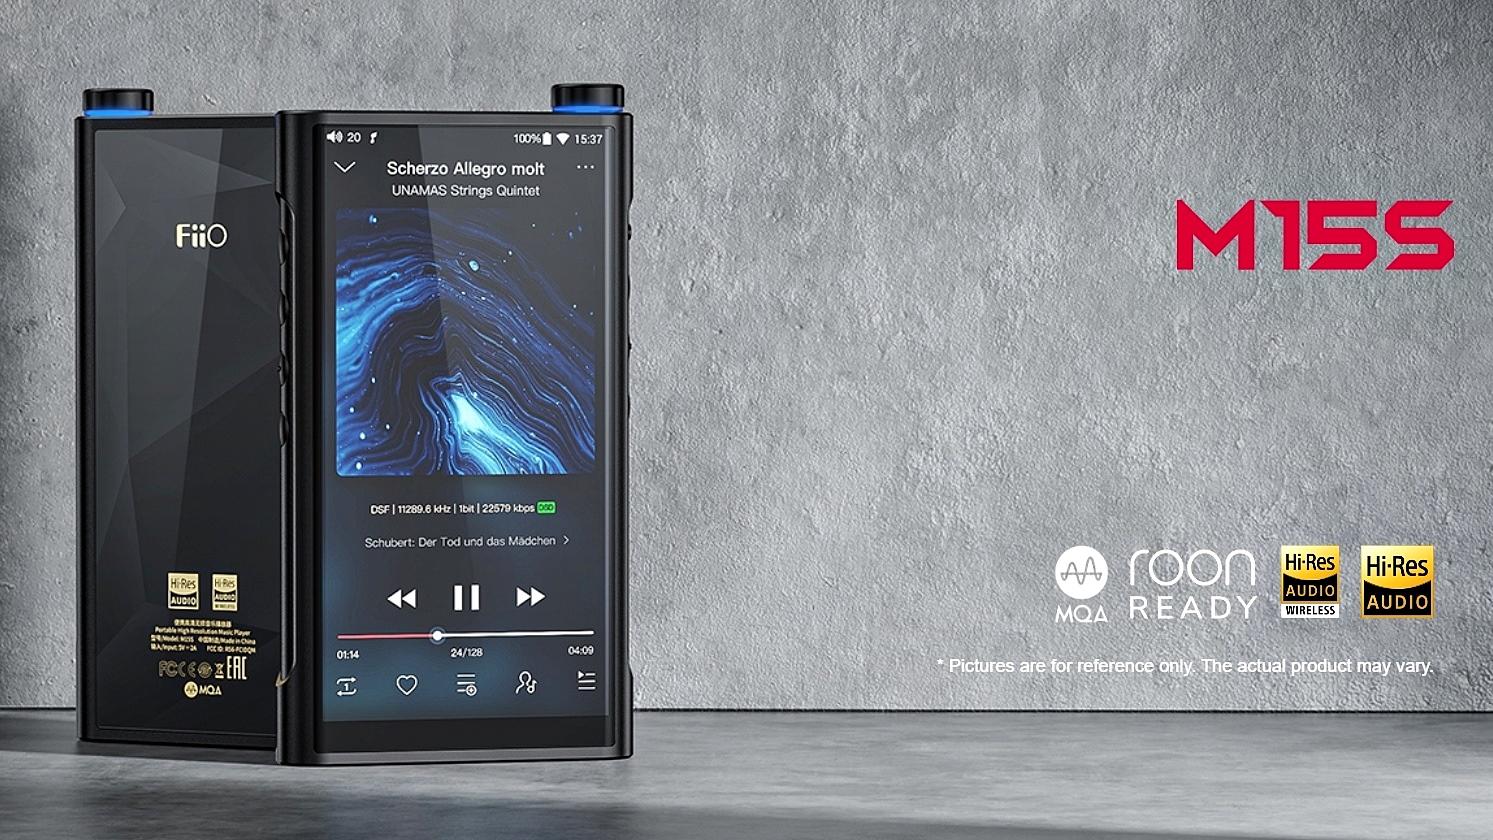 FiiO ra mắt máy nghe nhạc M15S: Android 10, chip DAC ES9038PRO, 6 chế độ làm việc, $999